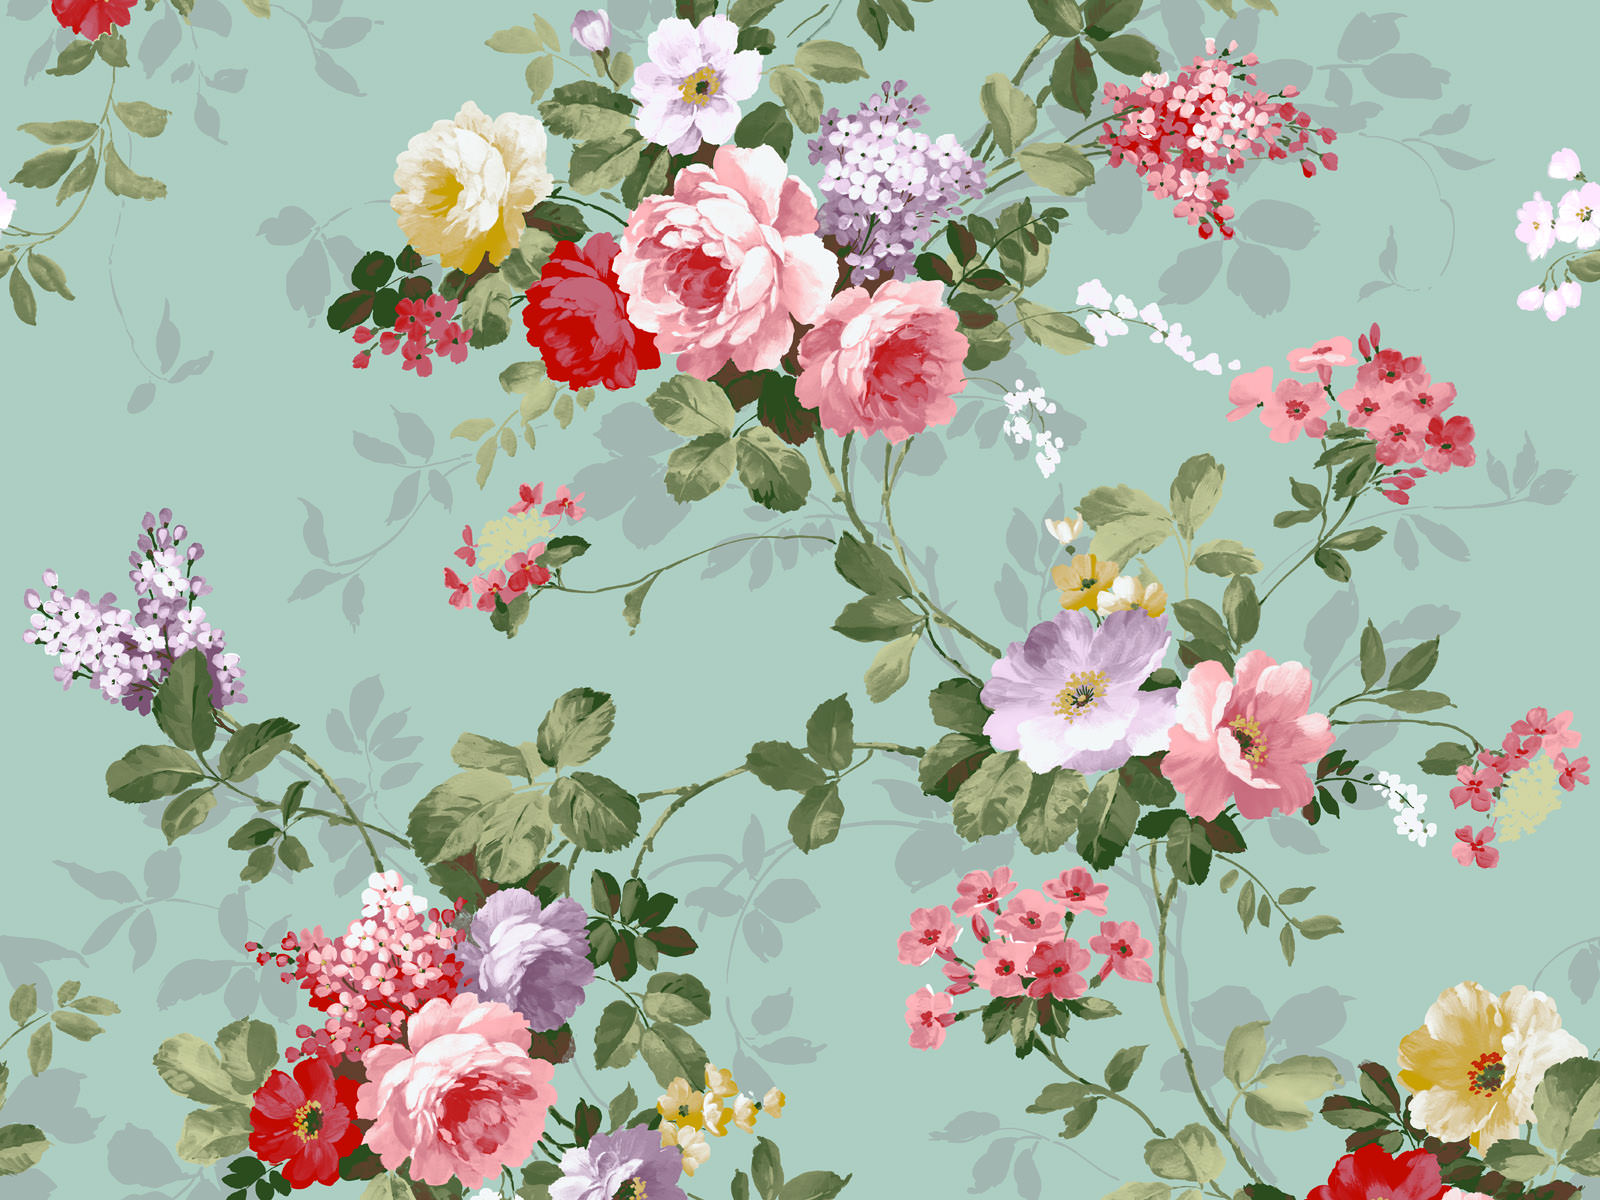 Vintage Floral Wallpaper Patterns